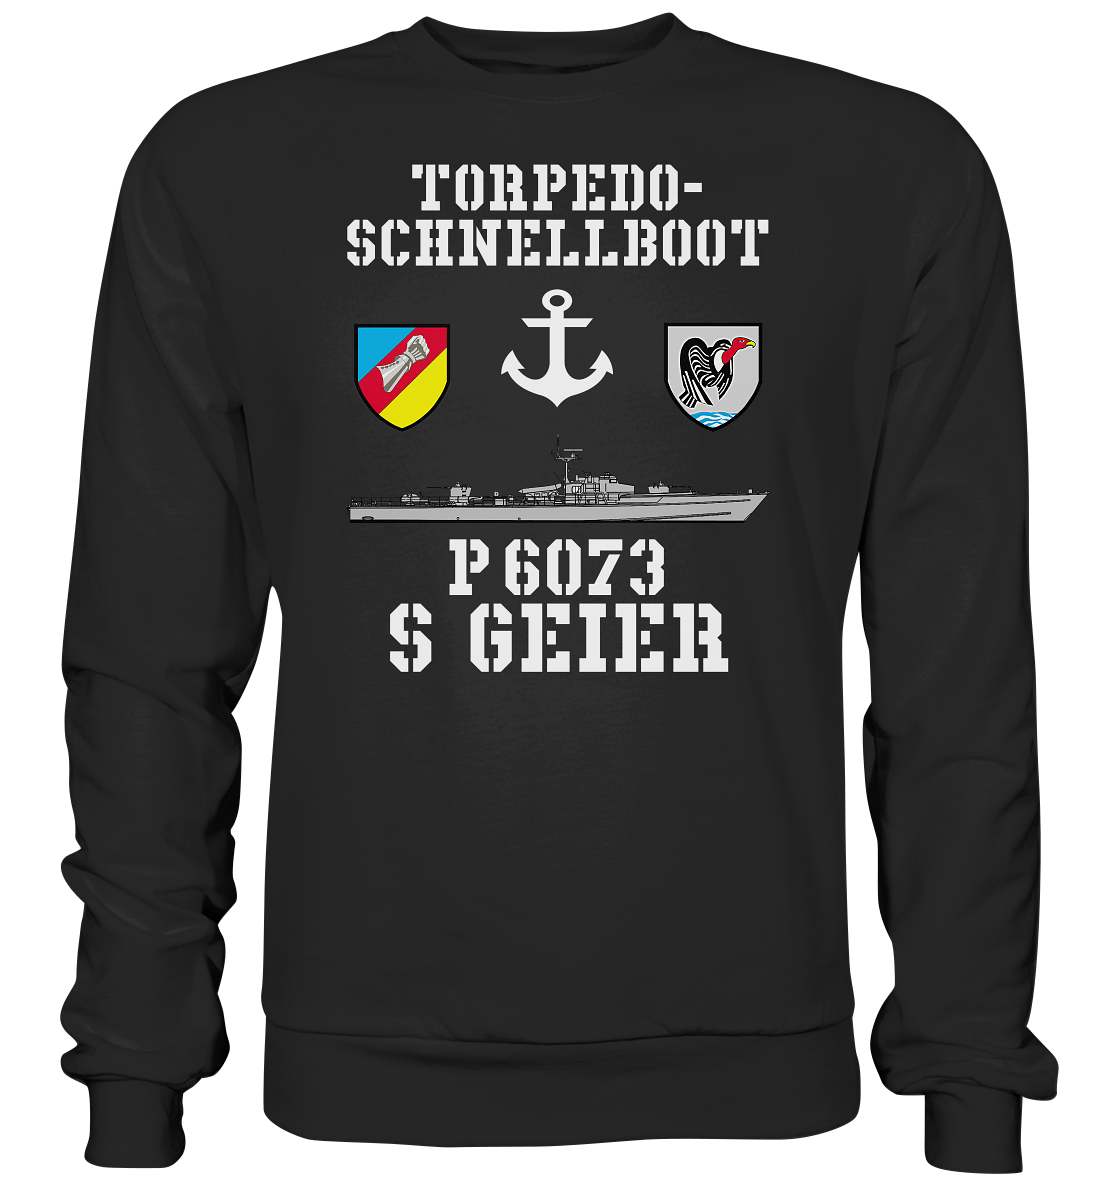 Torpedo-Schnellboot P6073 GEIER Anker - Premium Sweatshirt